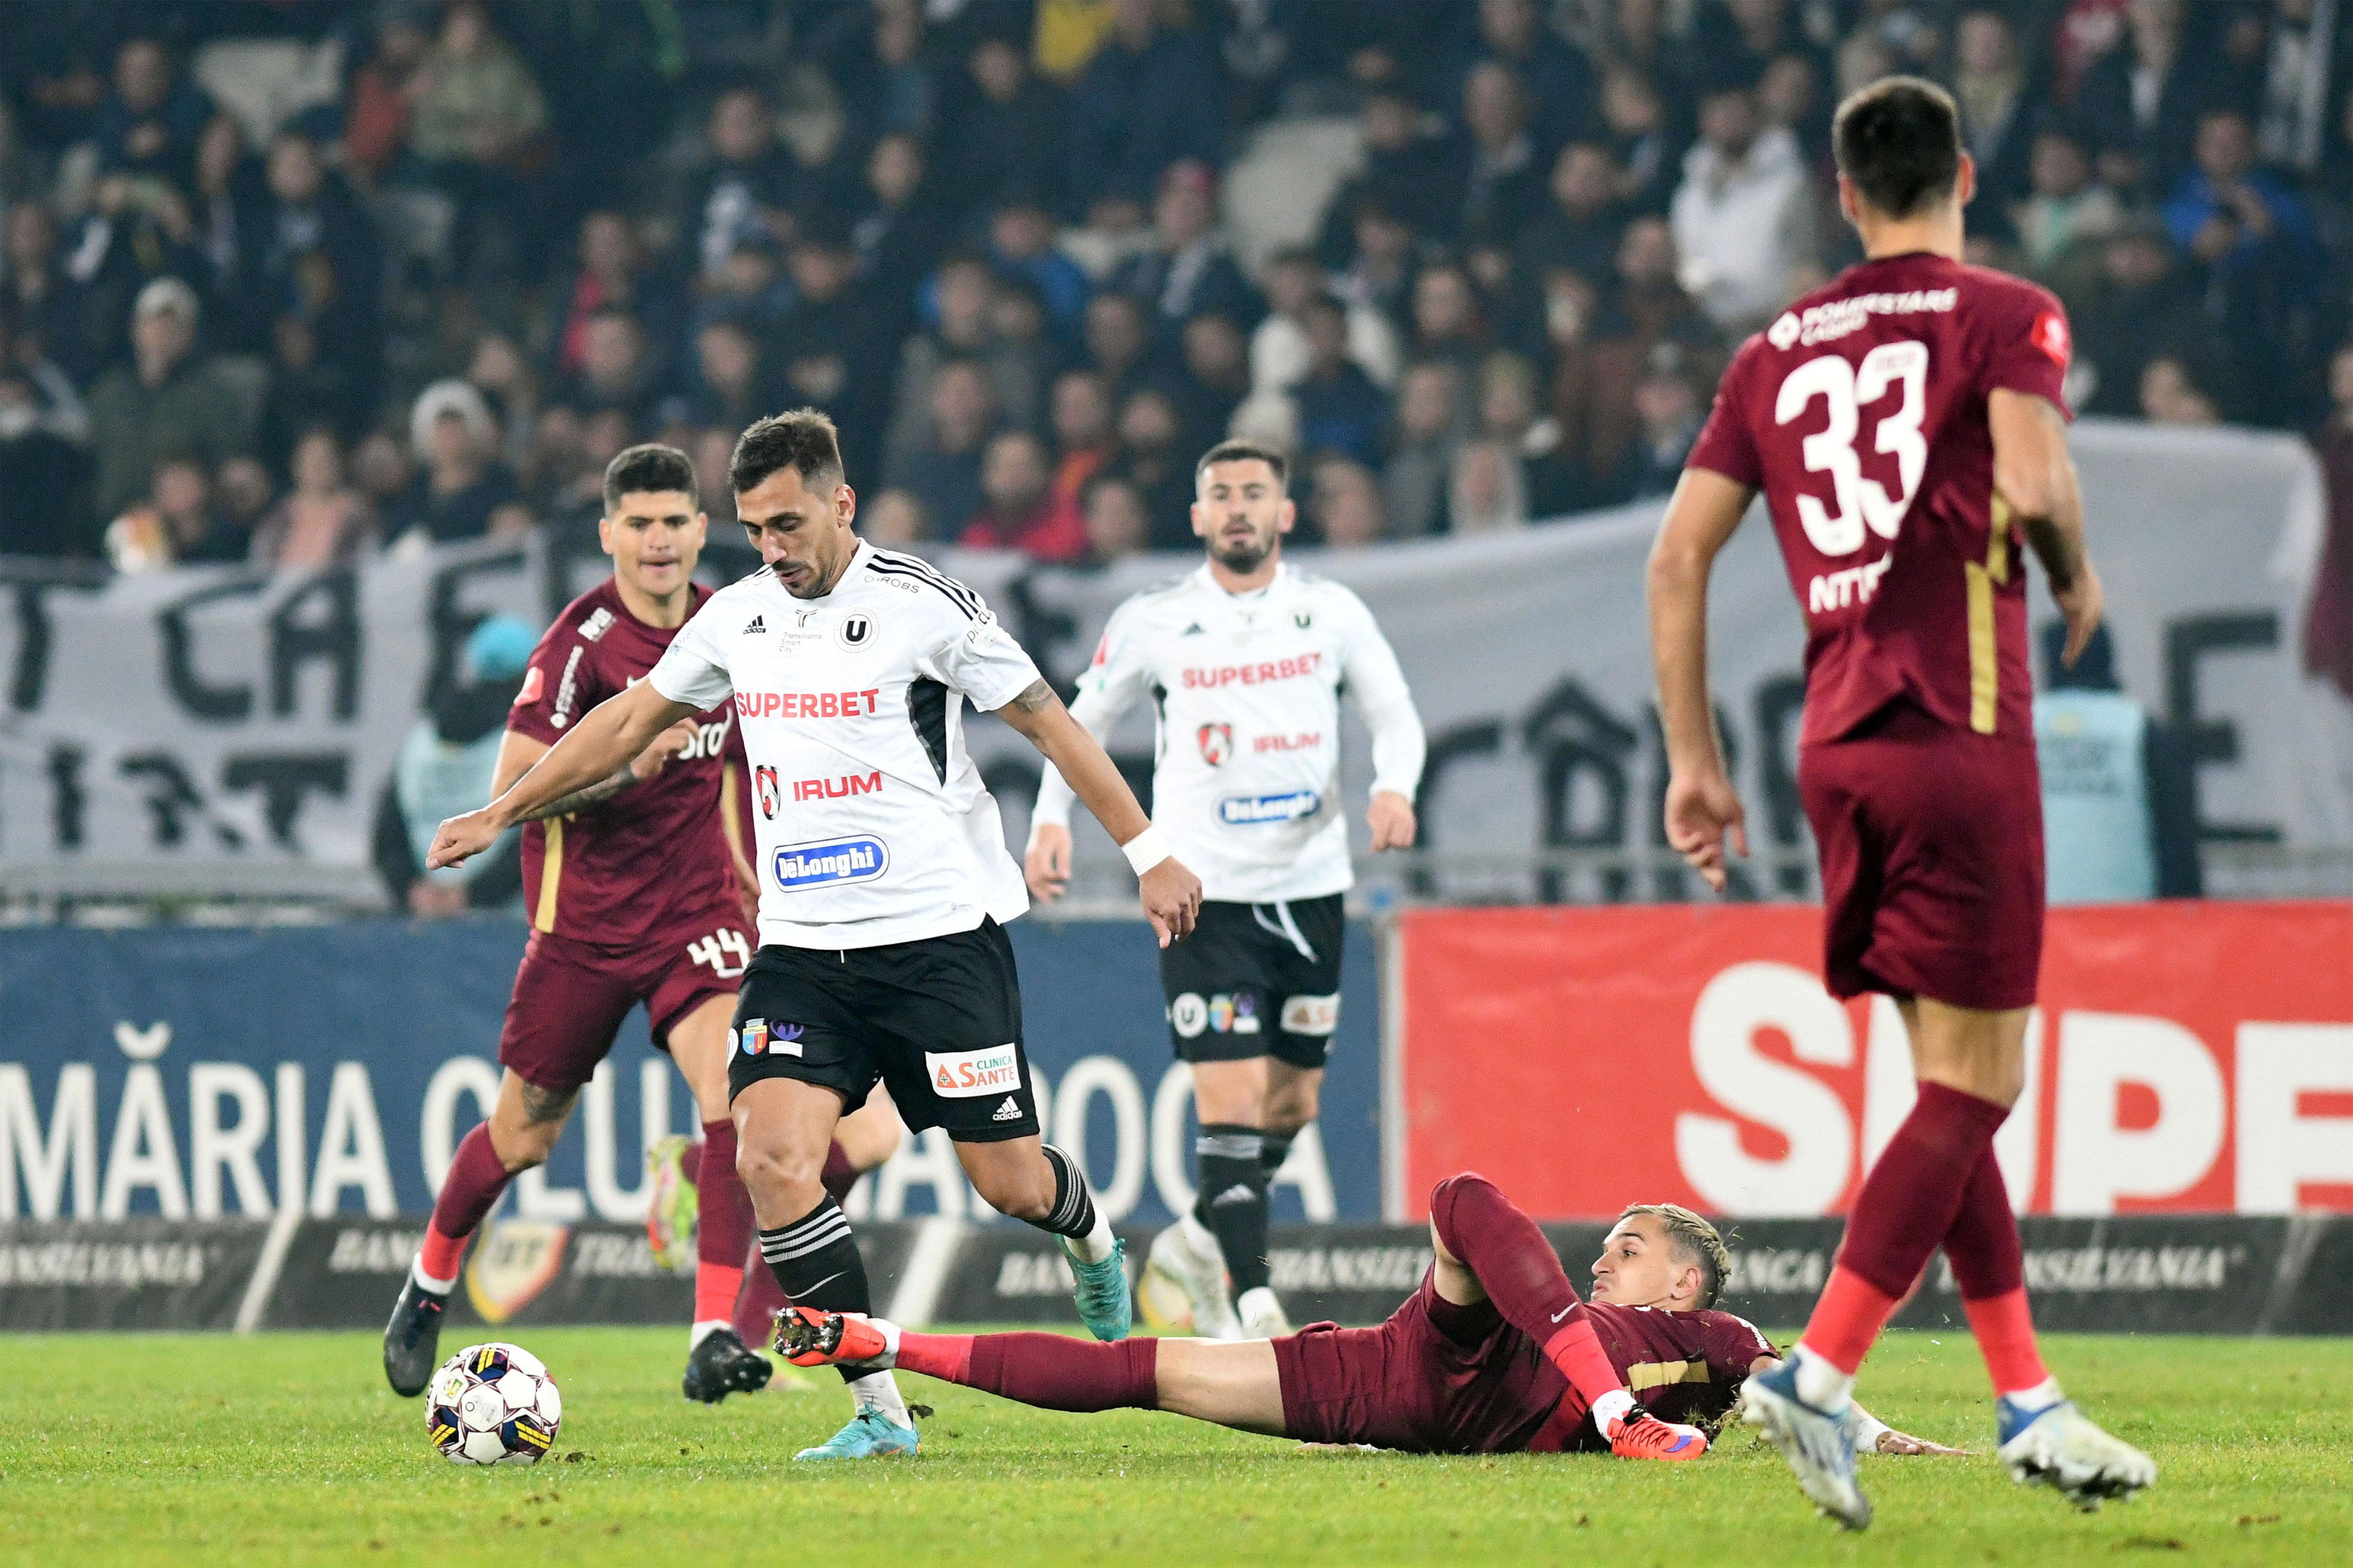 FC Hermannstadt – CFR. Duelul antrenorilor - Avancronică - LPF